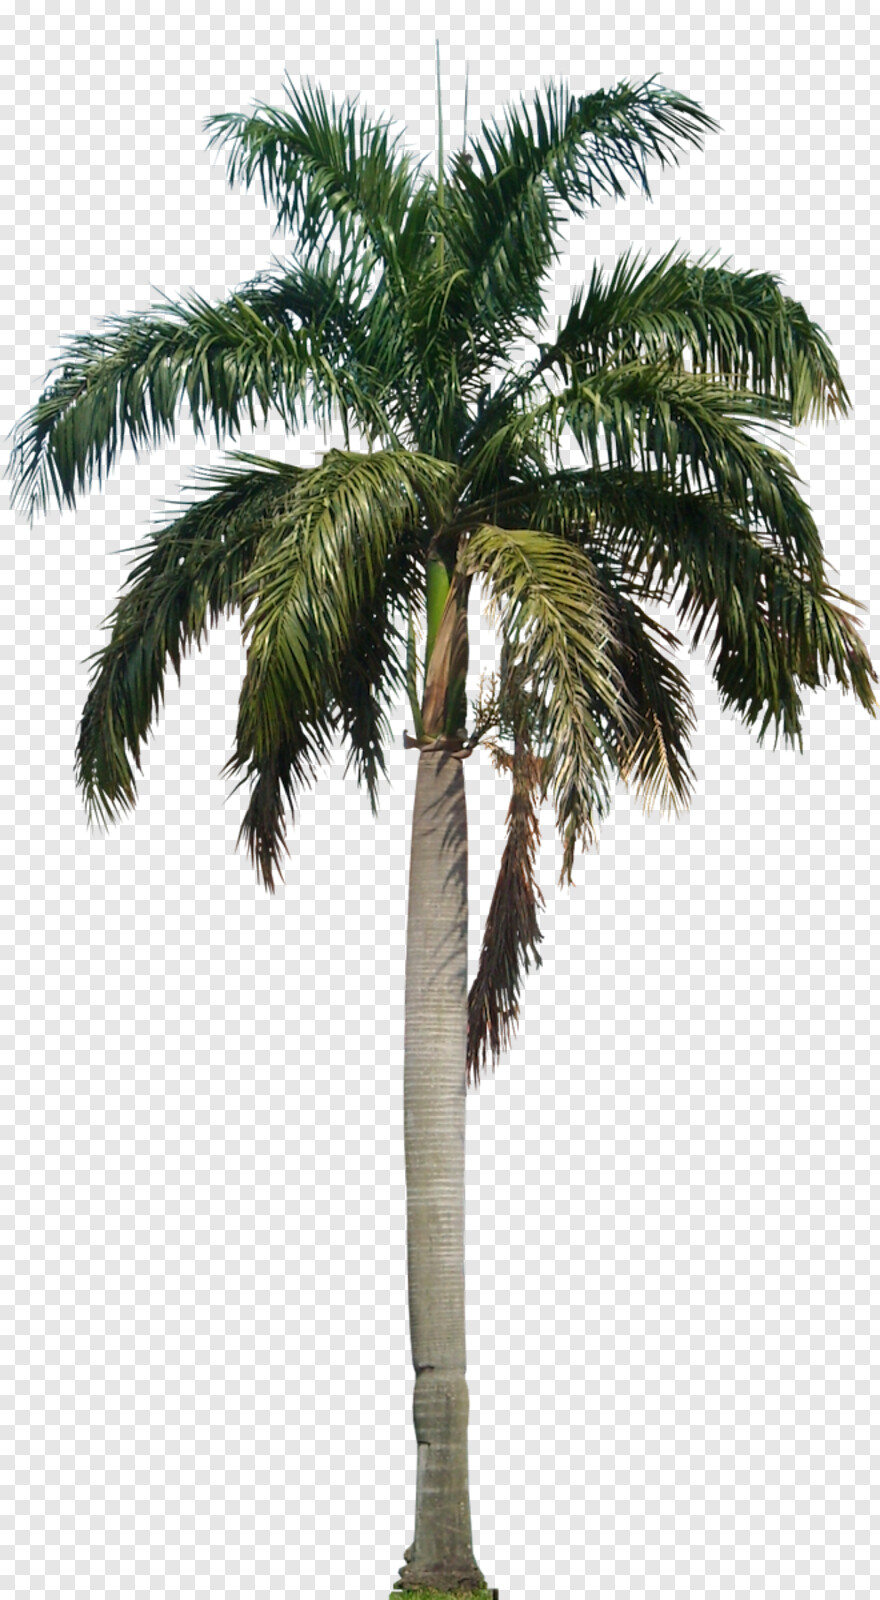 palm-tree # 461575